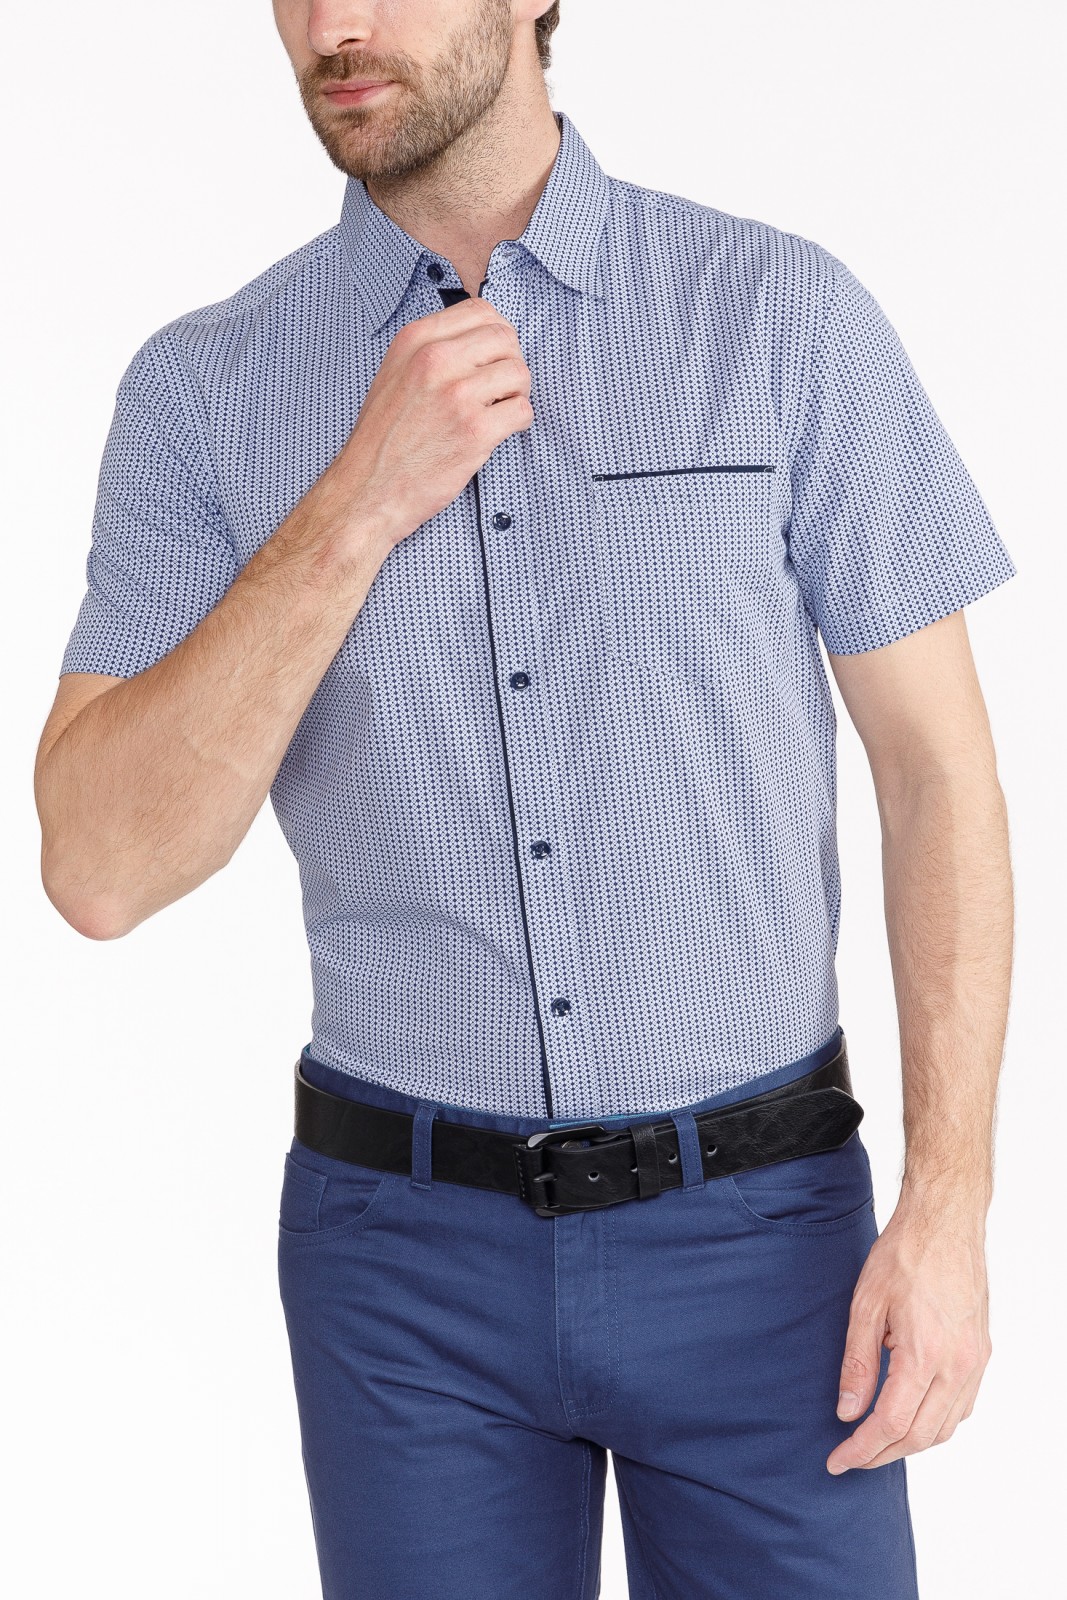 Рубашка с  короткими рукавами zolla 010242259153, цвет голубой, размер M